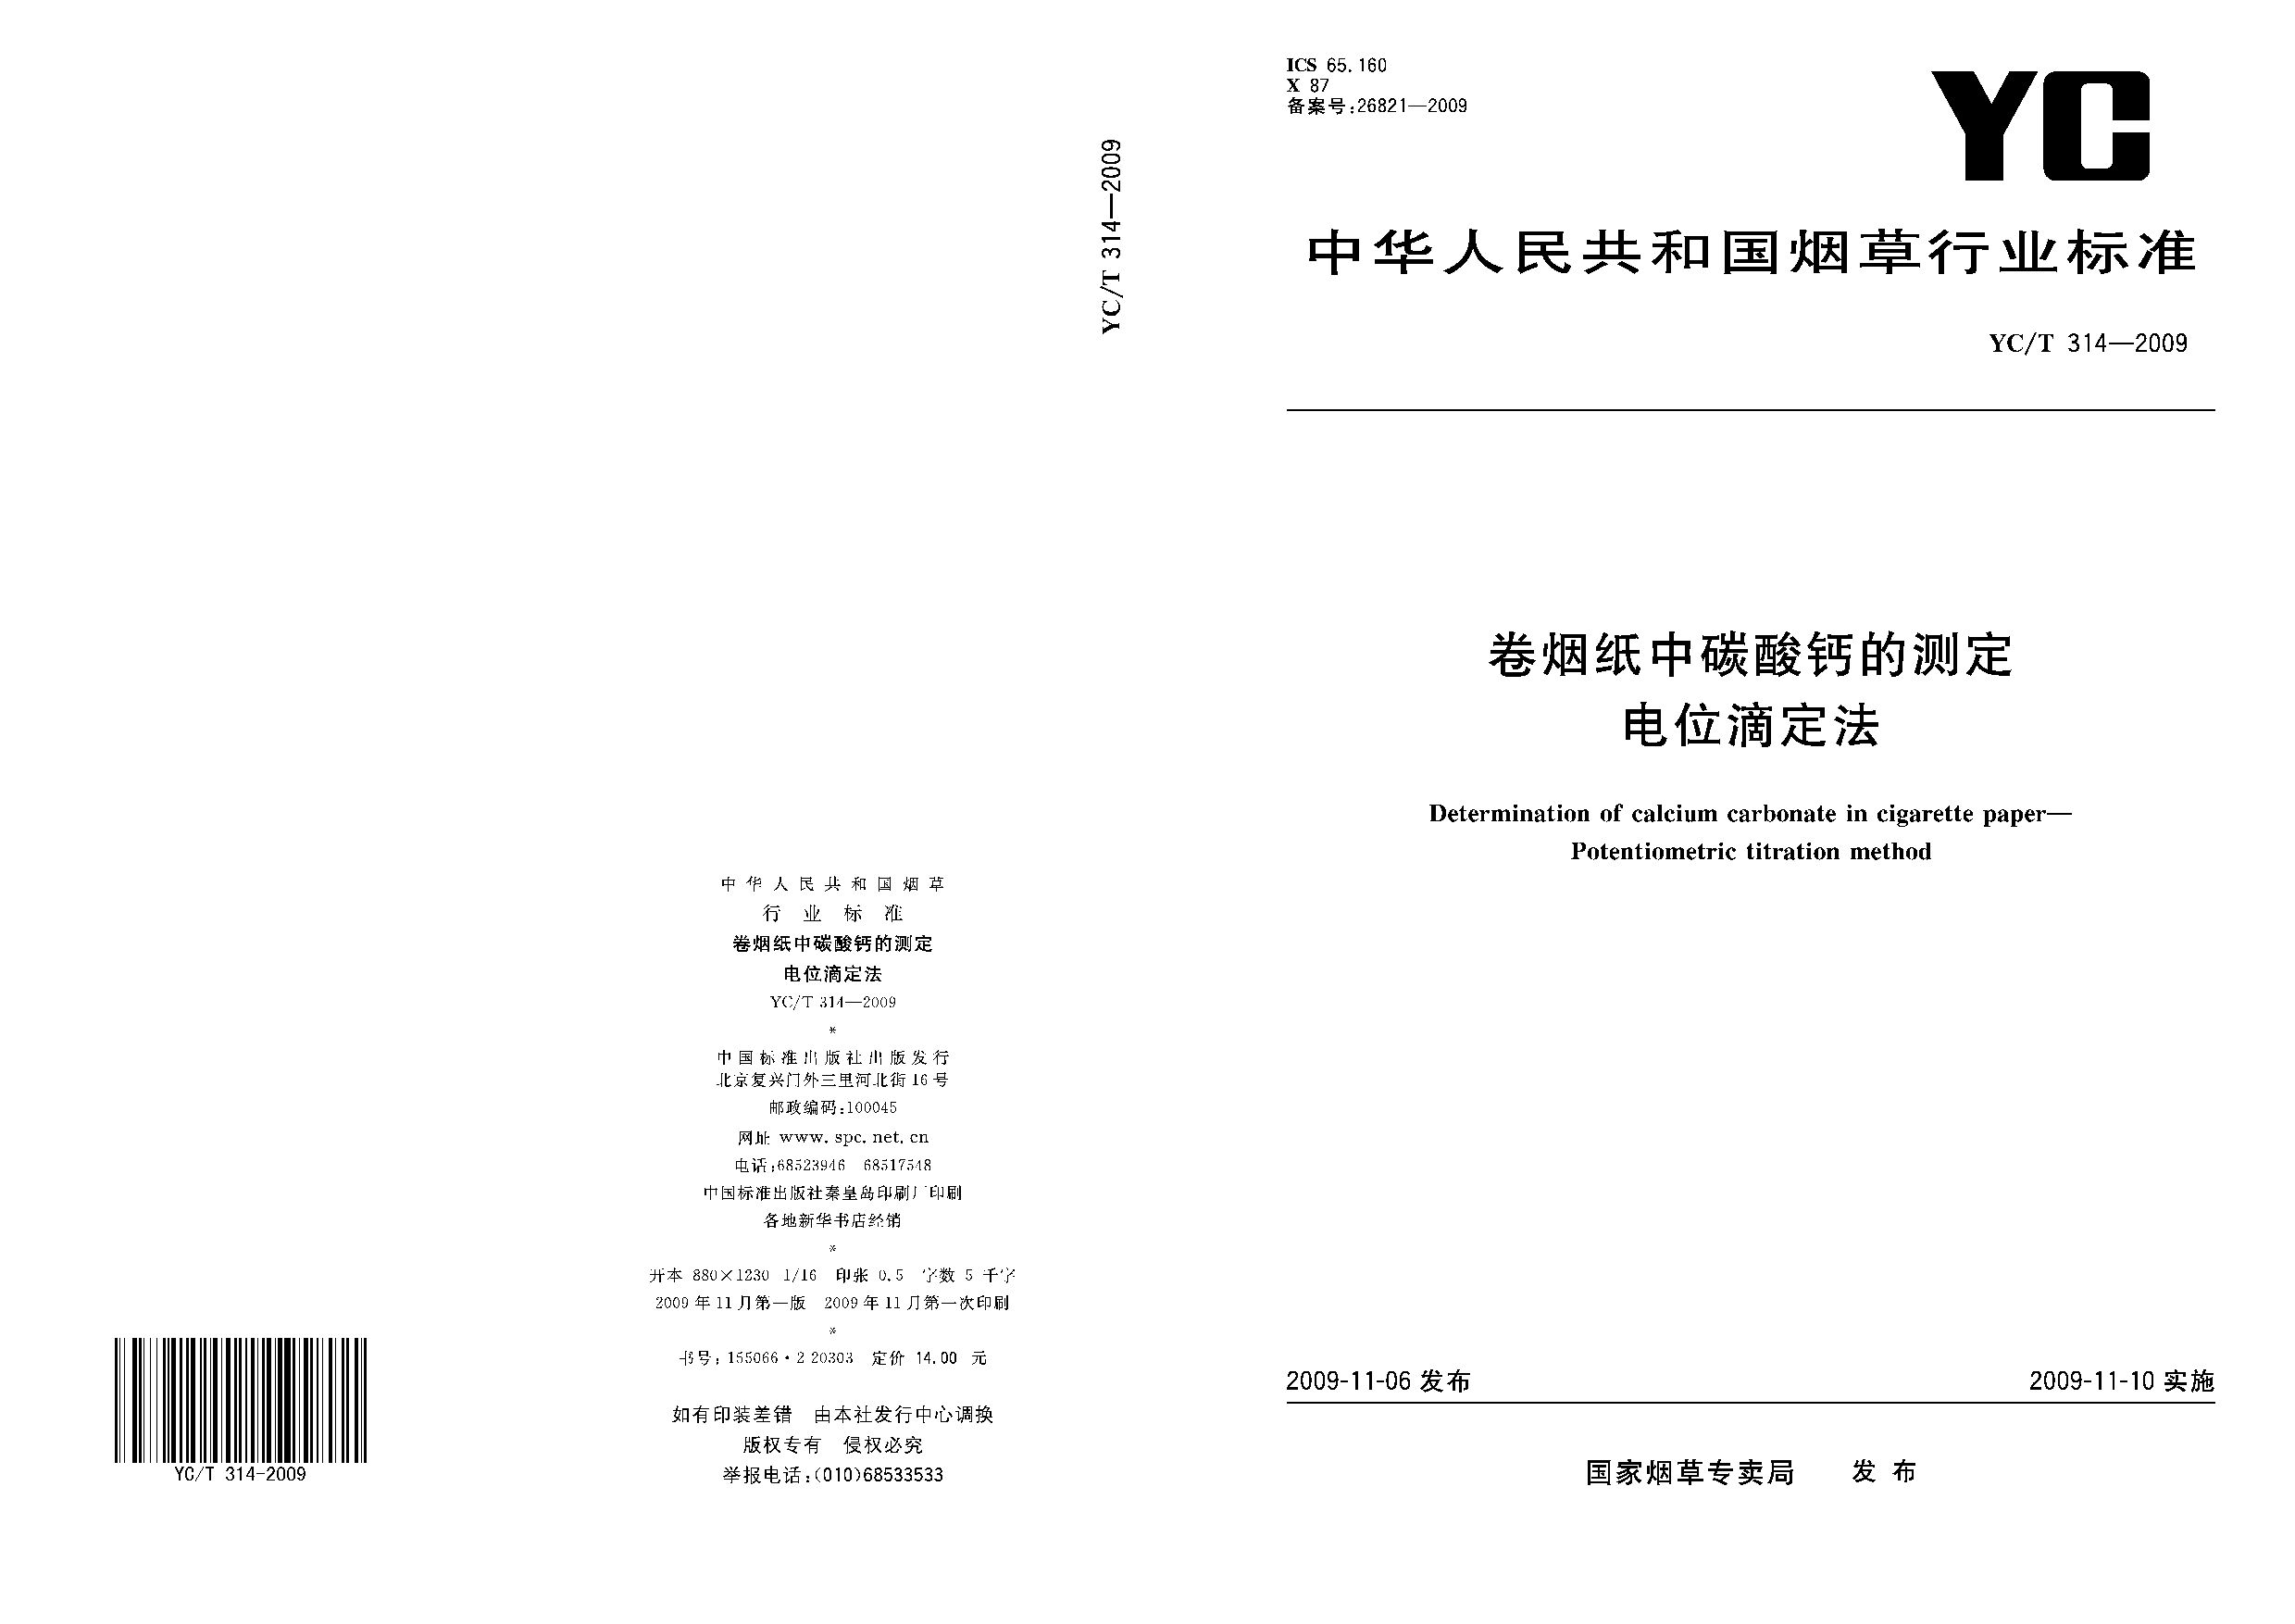 YC/T 314-2009封面图